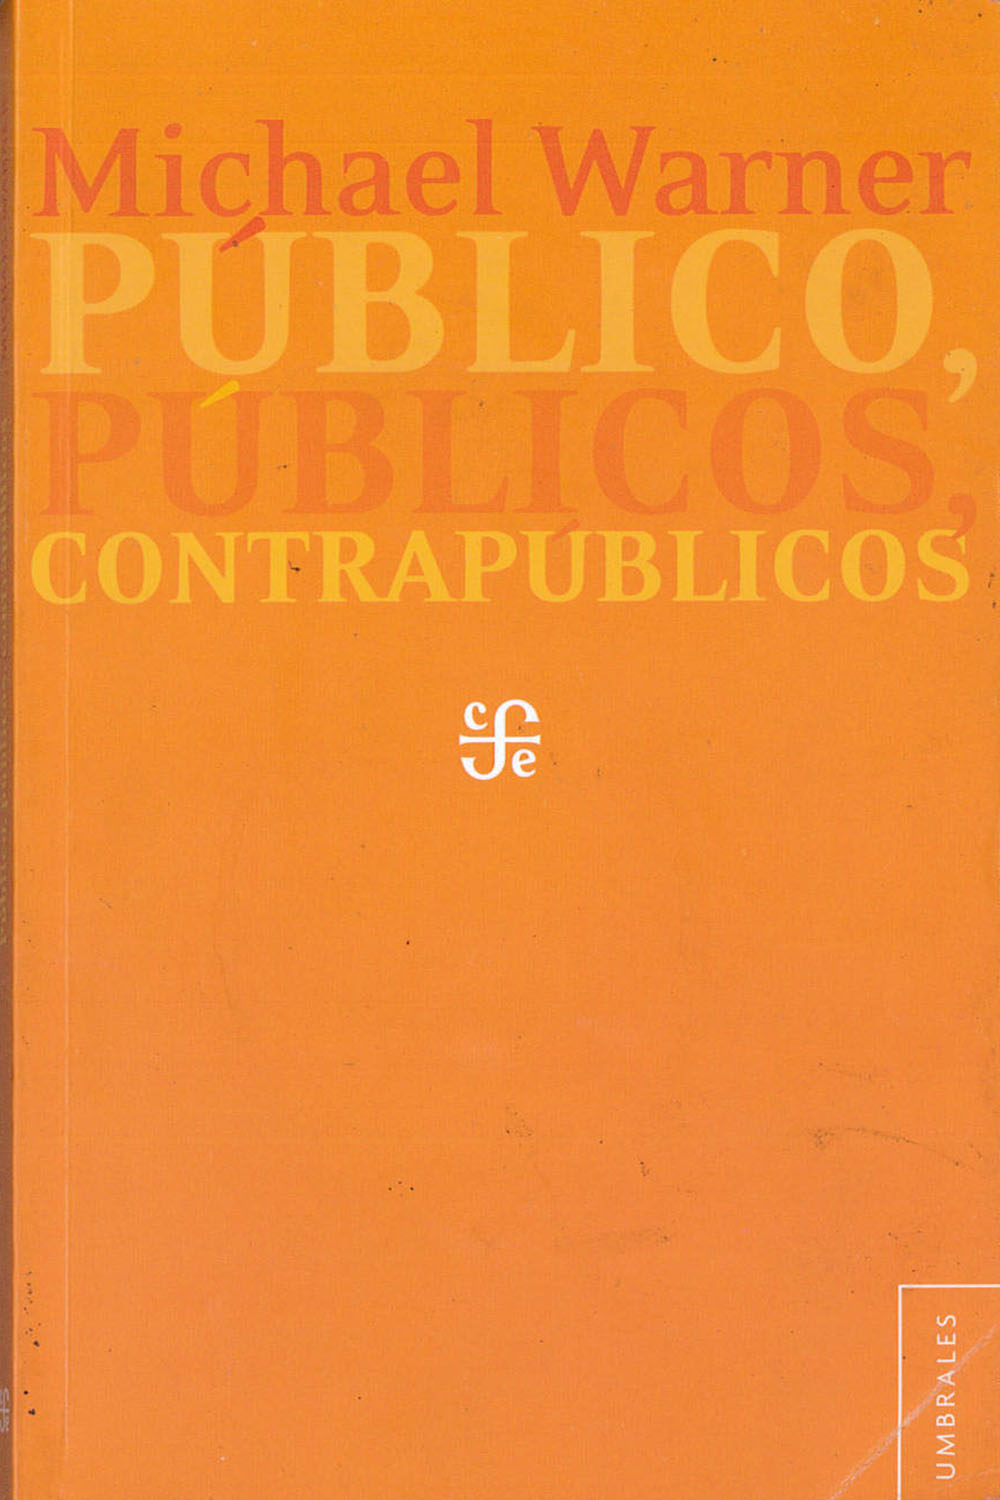 21 / 26 - HM7006 W37 Público, Públicos y Contrapúblicos, Michael Warner - Fondo de Cultura Económica, México 2012